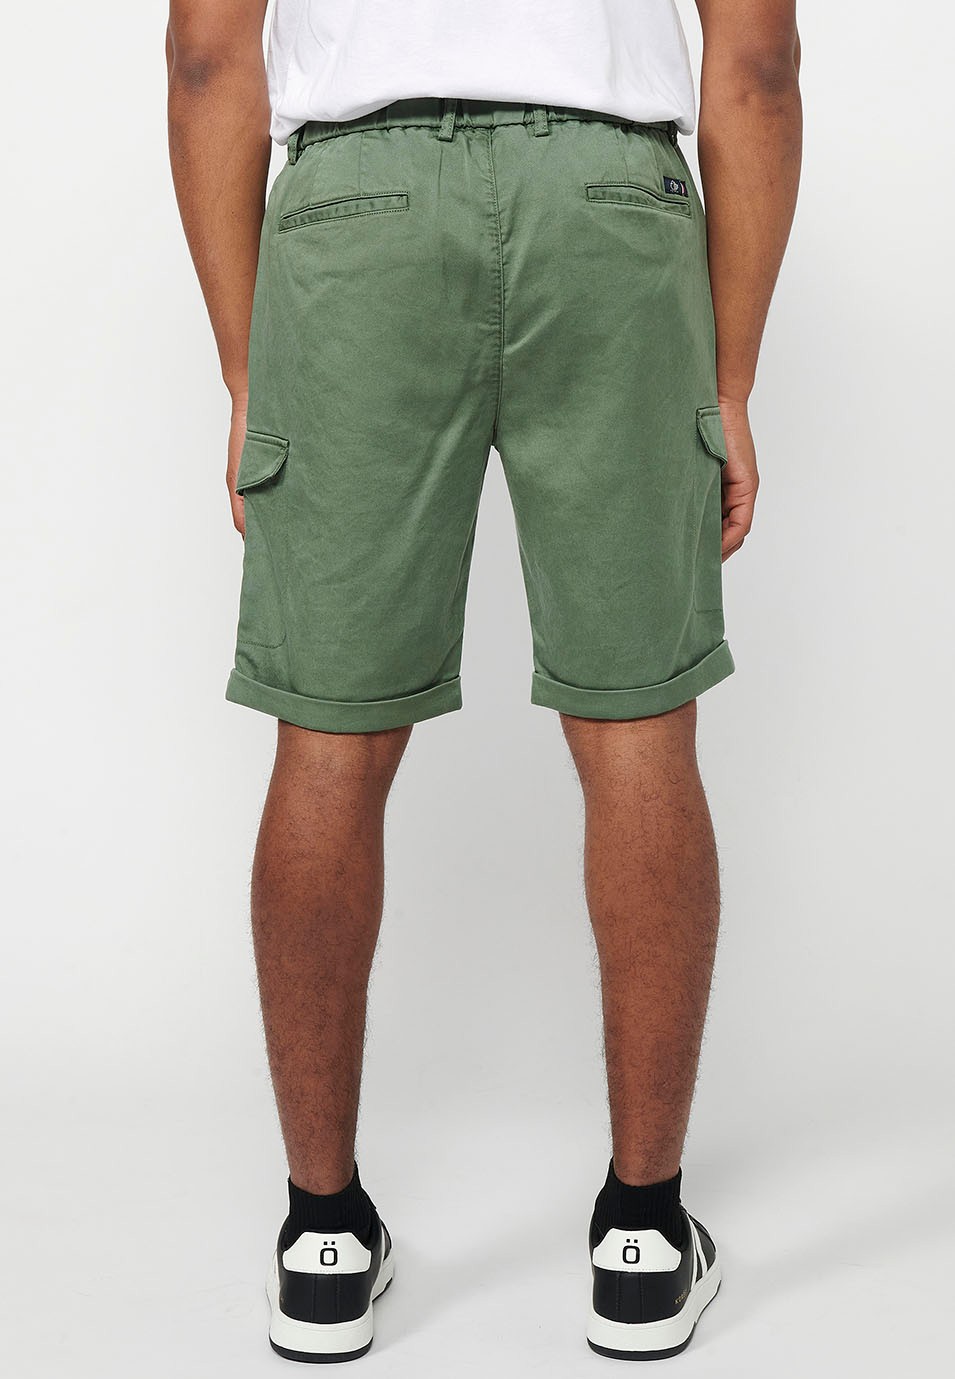 Pantalons curts amb Cintura engomada i tancament amb cremallera i botó amb Butxaques, dos laterals amb solapa de Color Verd per a Home 2